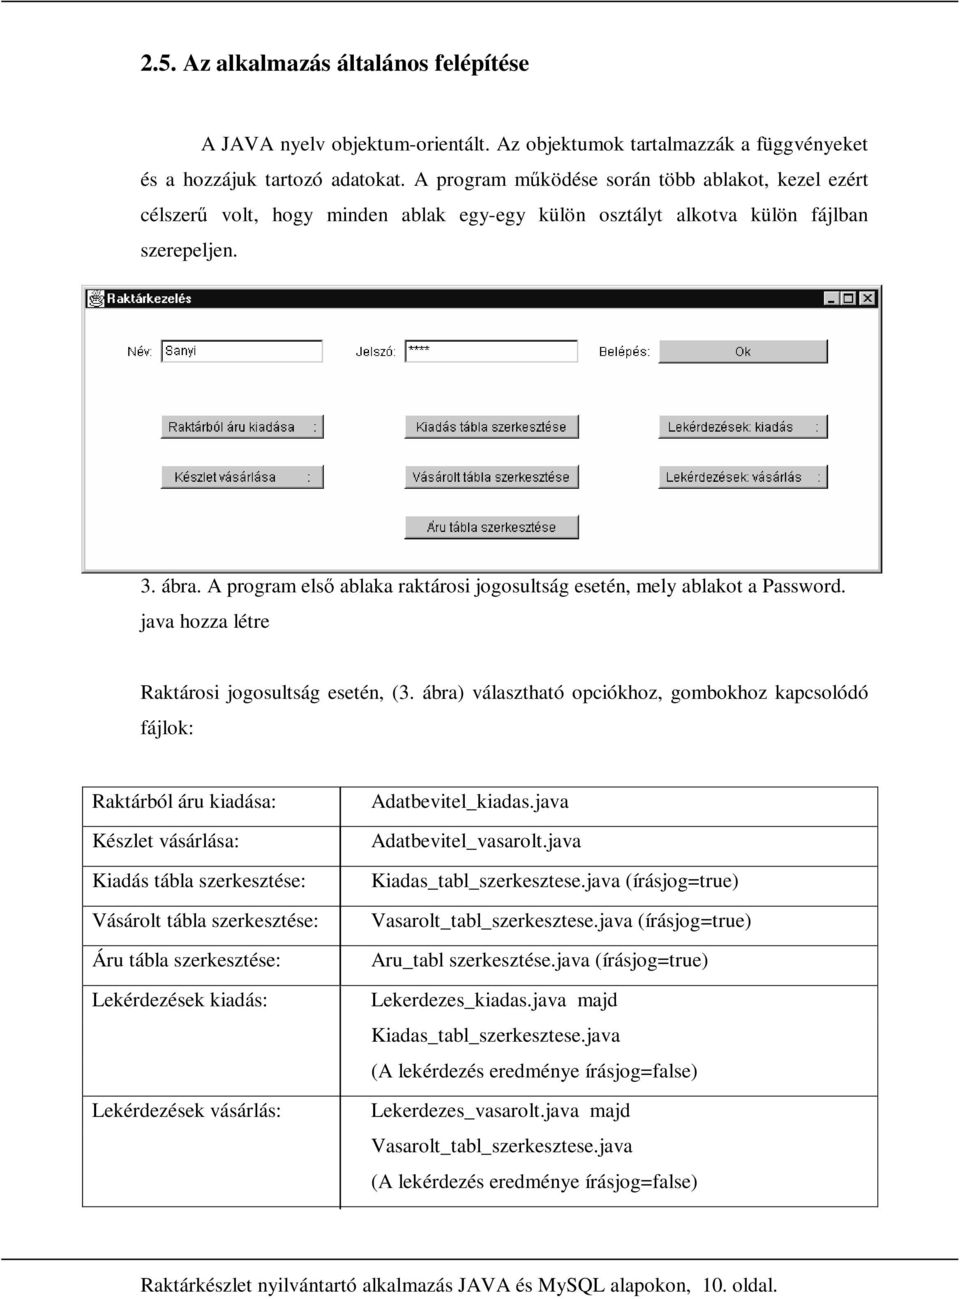 1.Bevezetés. Raktárkészlet nyilvántartó alkalmazás JAVA és MySQL alapokon,  1. oldal. - PDF Ingyenes letöltés